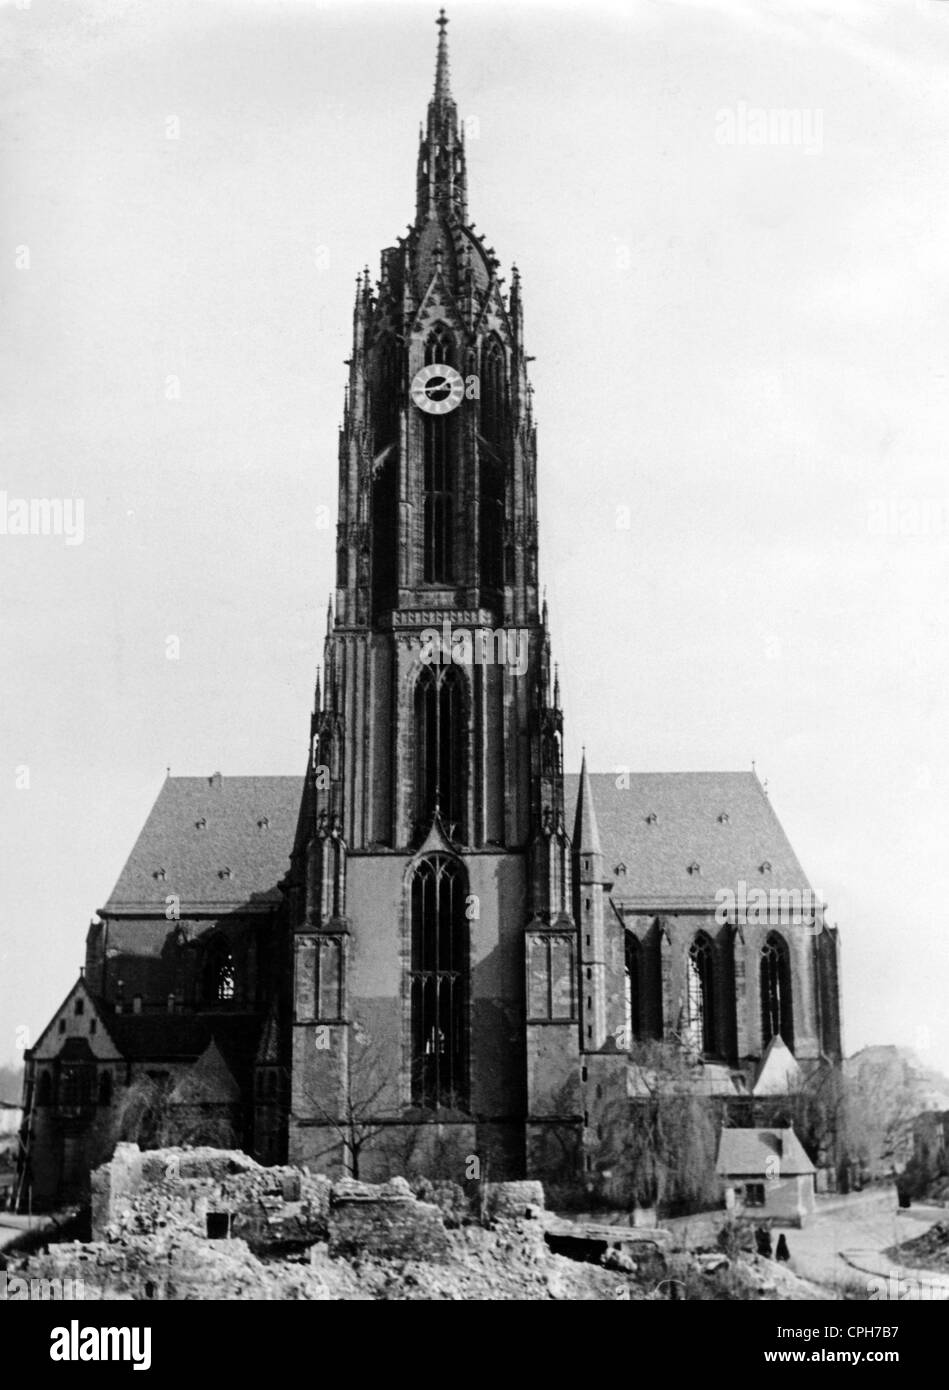 Période d'après-guerre, villes détruites, Allemagne, Francfort-sur-le-main, cathédrale, années 1940, droits additionnels-Clearences-non disponible Banque D'Images